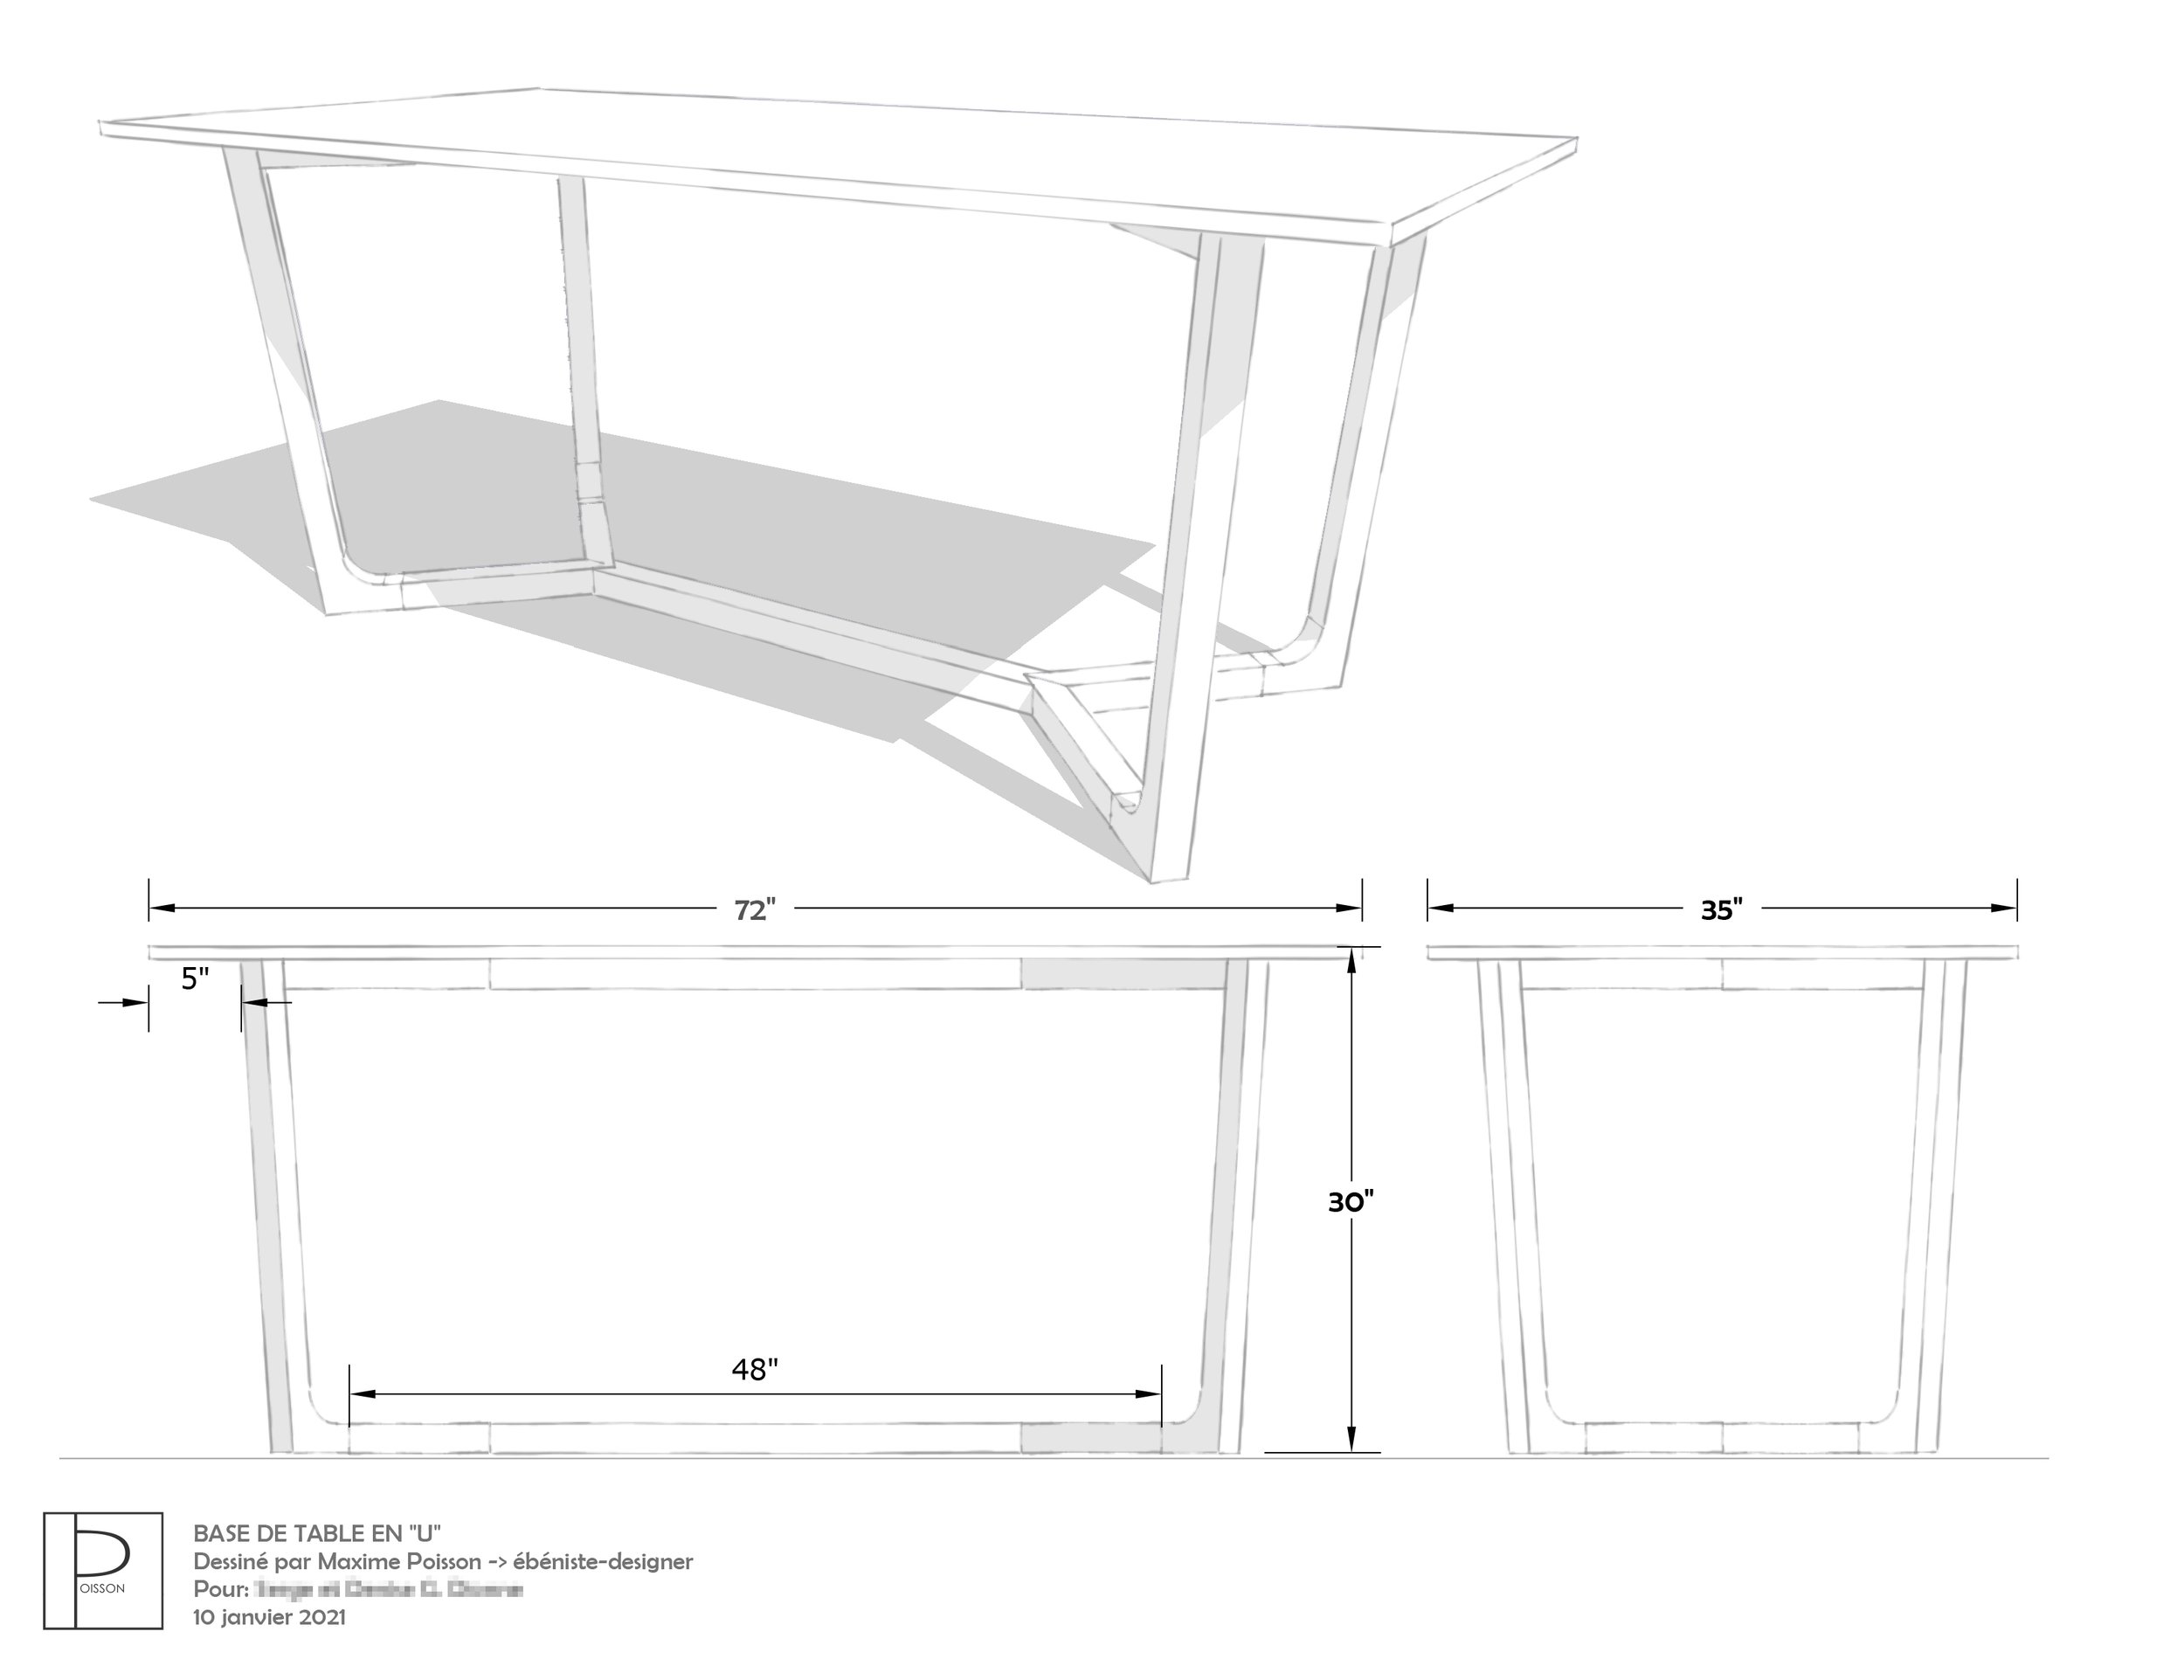 Dessin technique d'une table en 3 dimensions (copie)